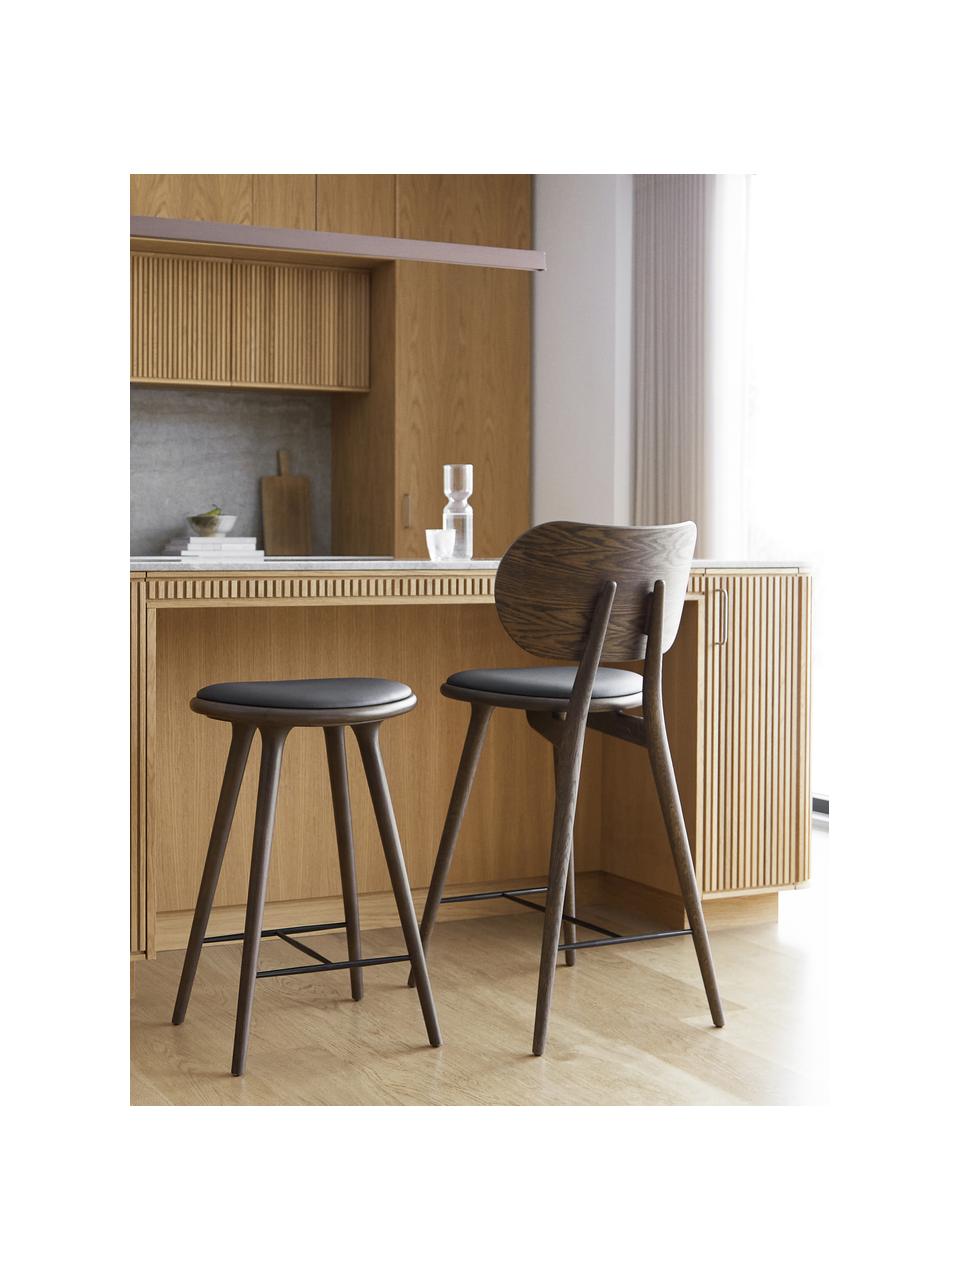 Barová židle z bukového dřeva a kůže High Stool, Bukové dřevo, kůže černá, Š 45 cm, V 69 cm